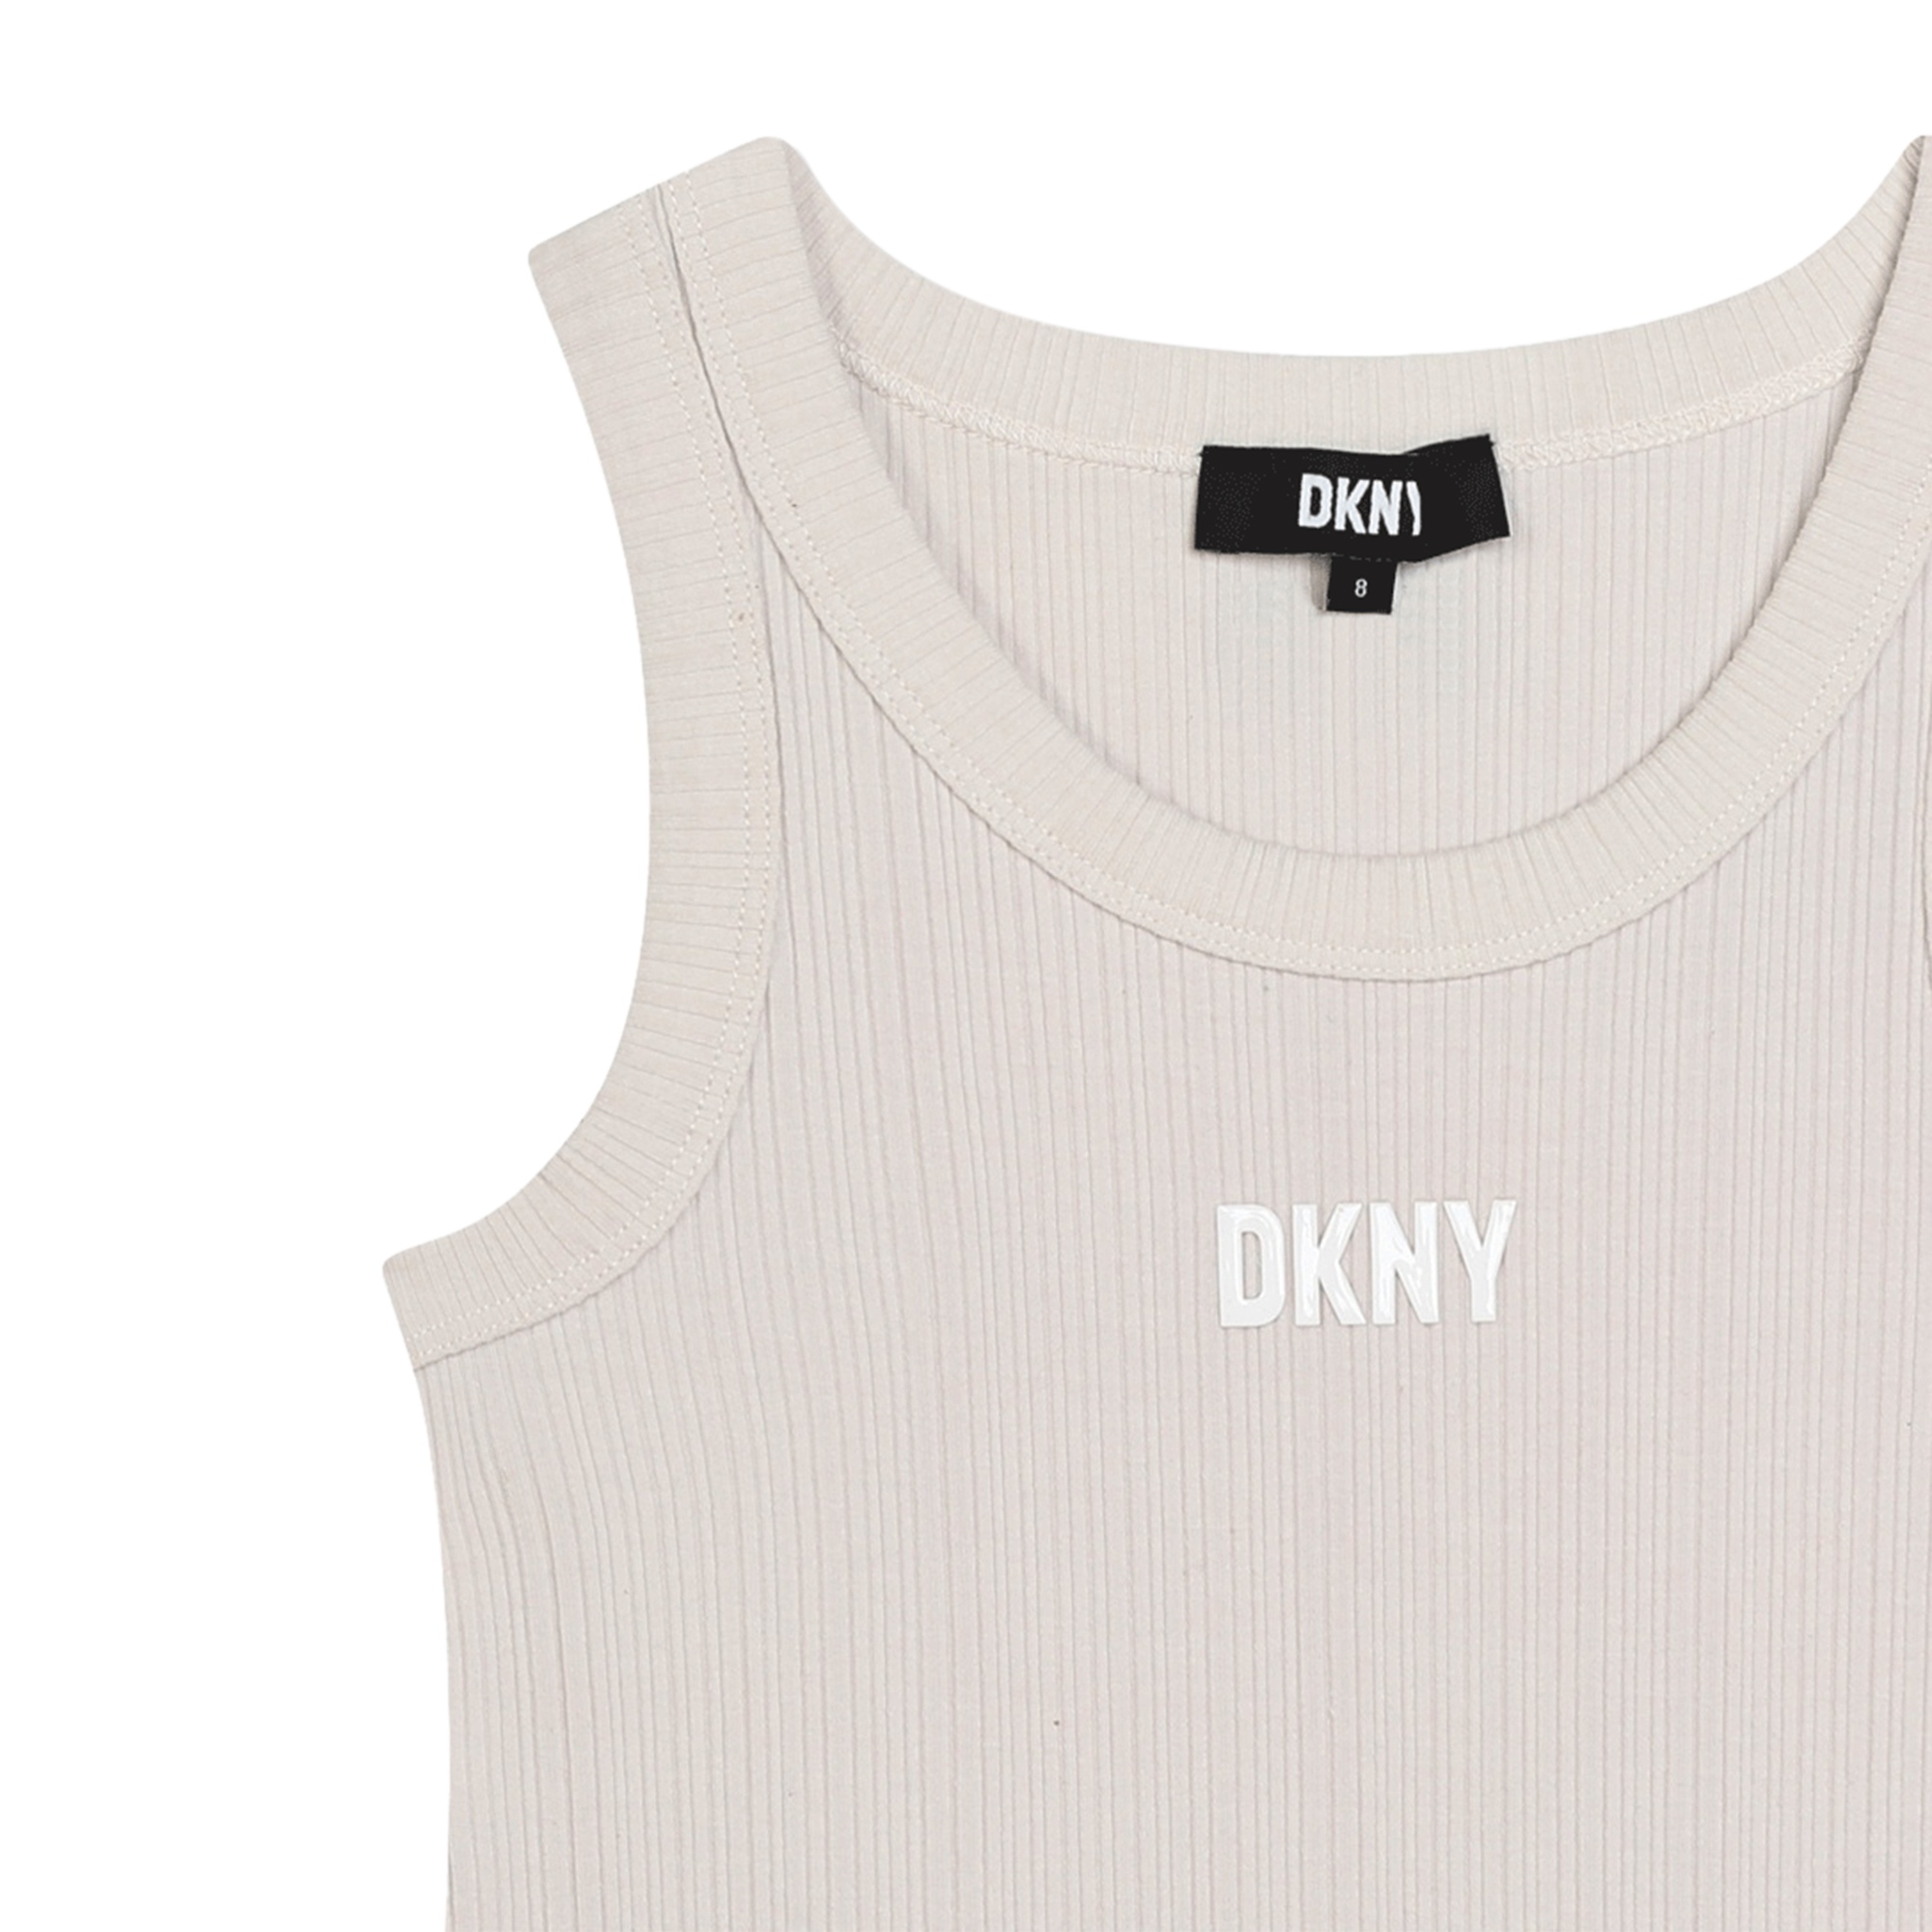 Débardeur en coton DKNY pour FILLE